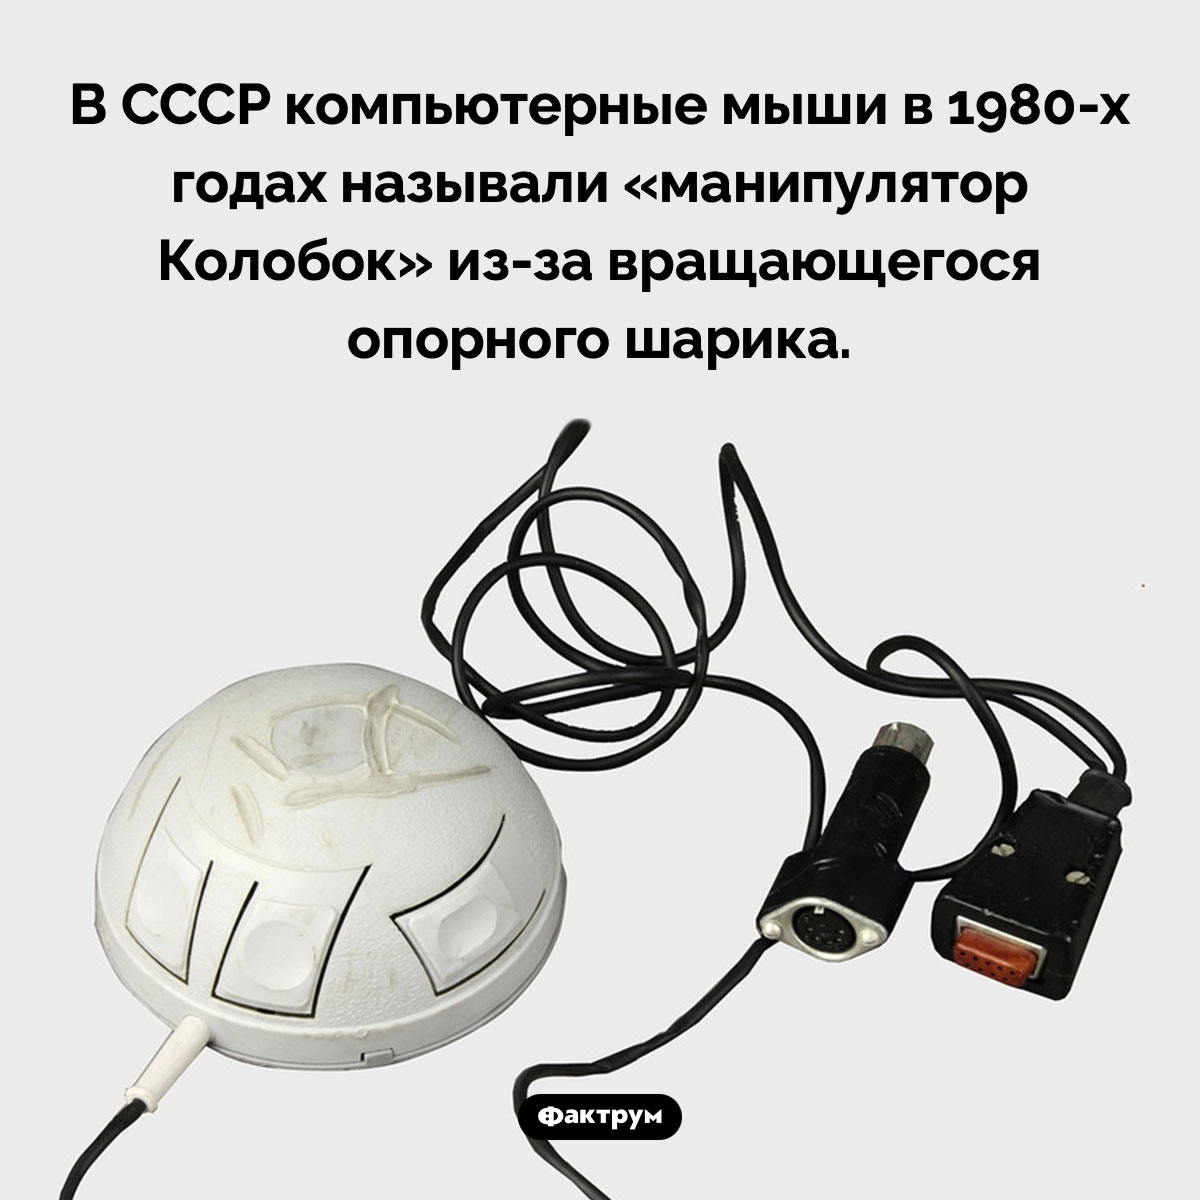 Манипулятор Колобок. В СССР компьютерные мыши в 1980-х годах называли «манипулятор Колобок» из-за вращающегося опорного шарика.